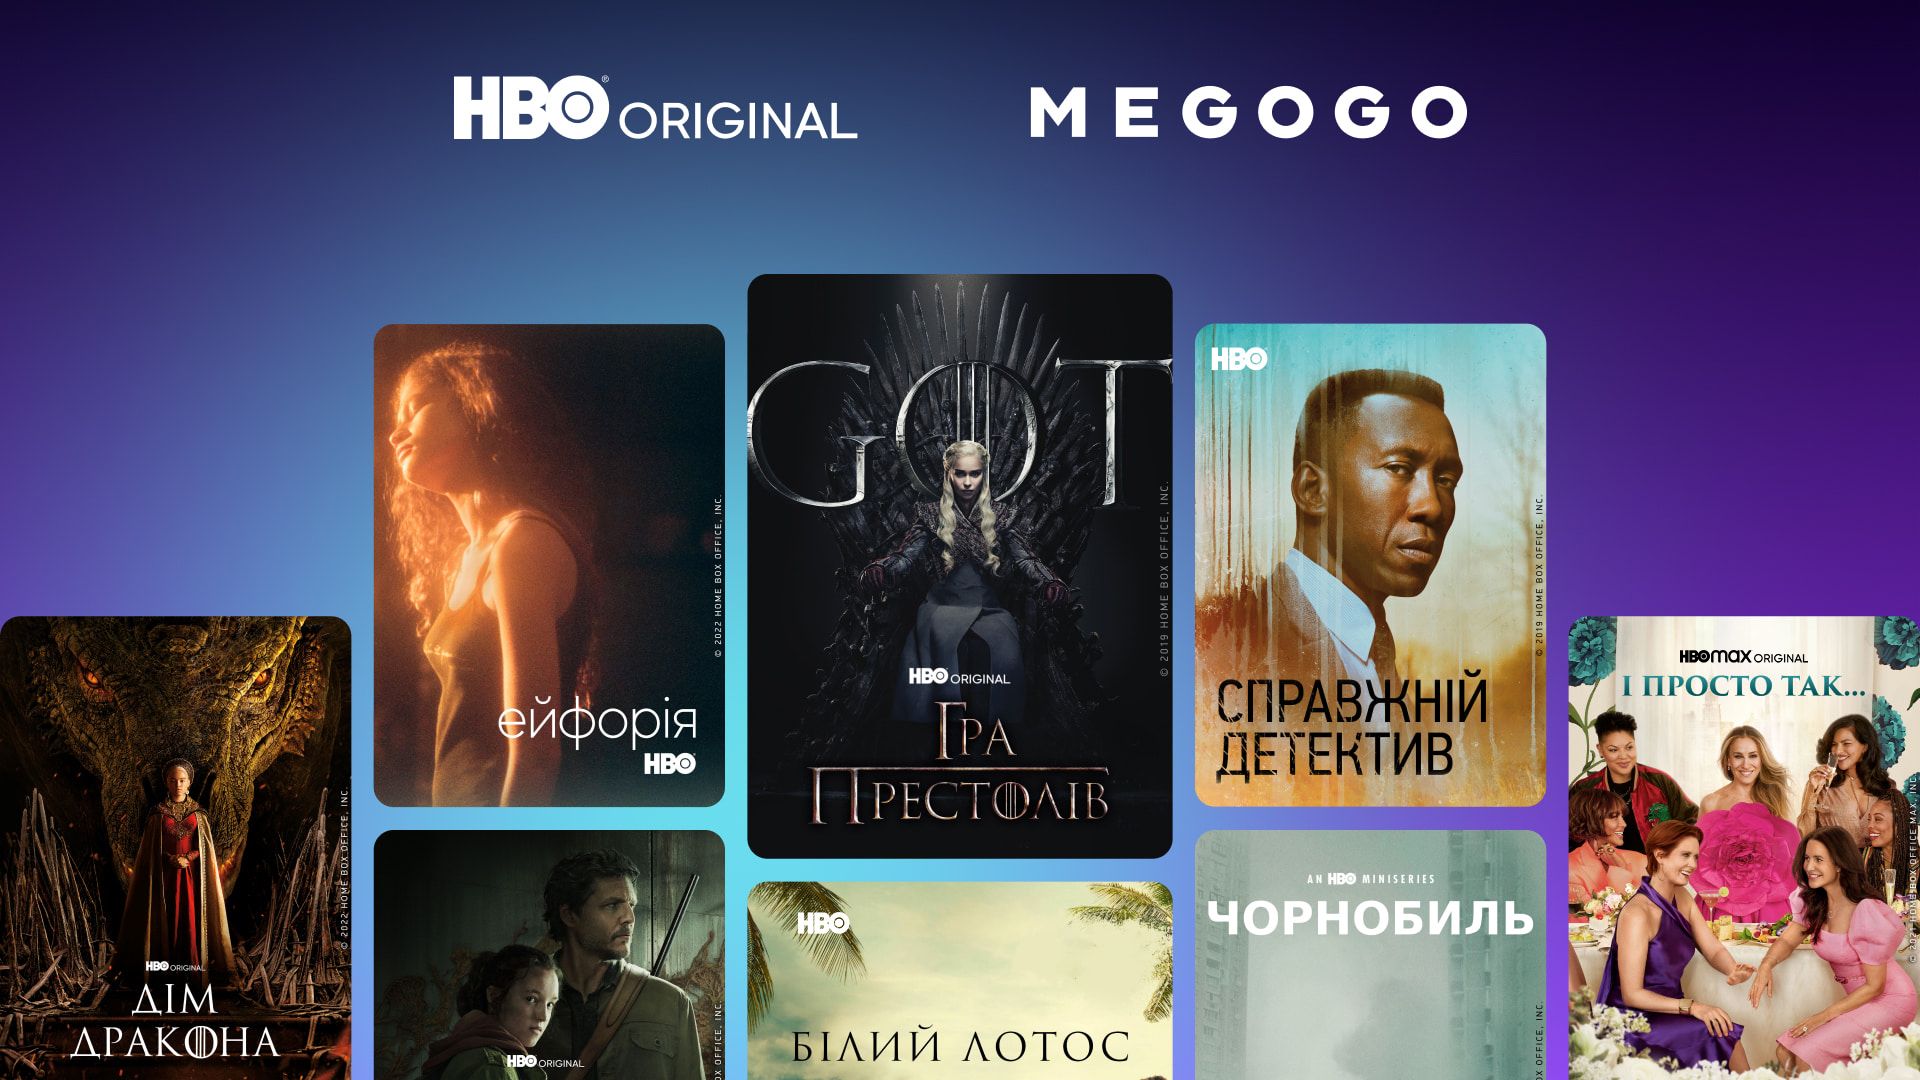 MEGOGO официально покажет фильмы и сериалы HBO и MAX – Дом Дракона, И просто так, Белый лотос